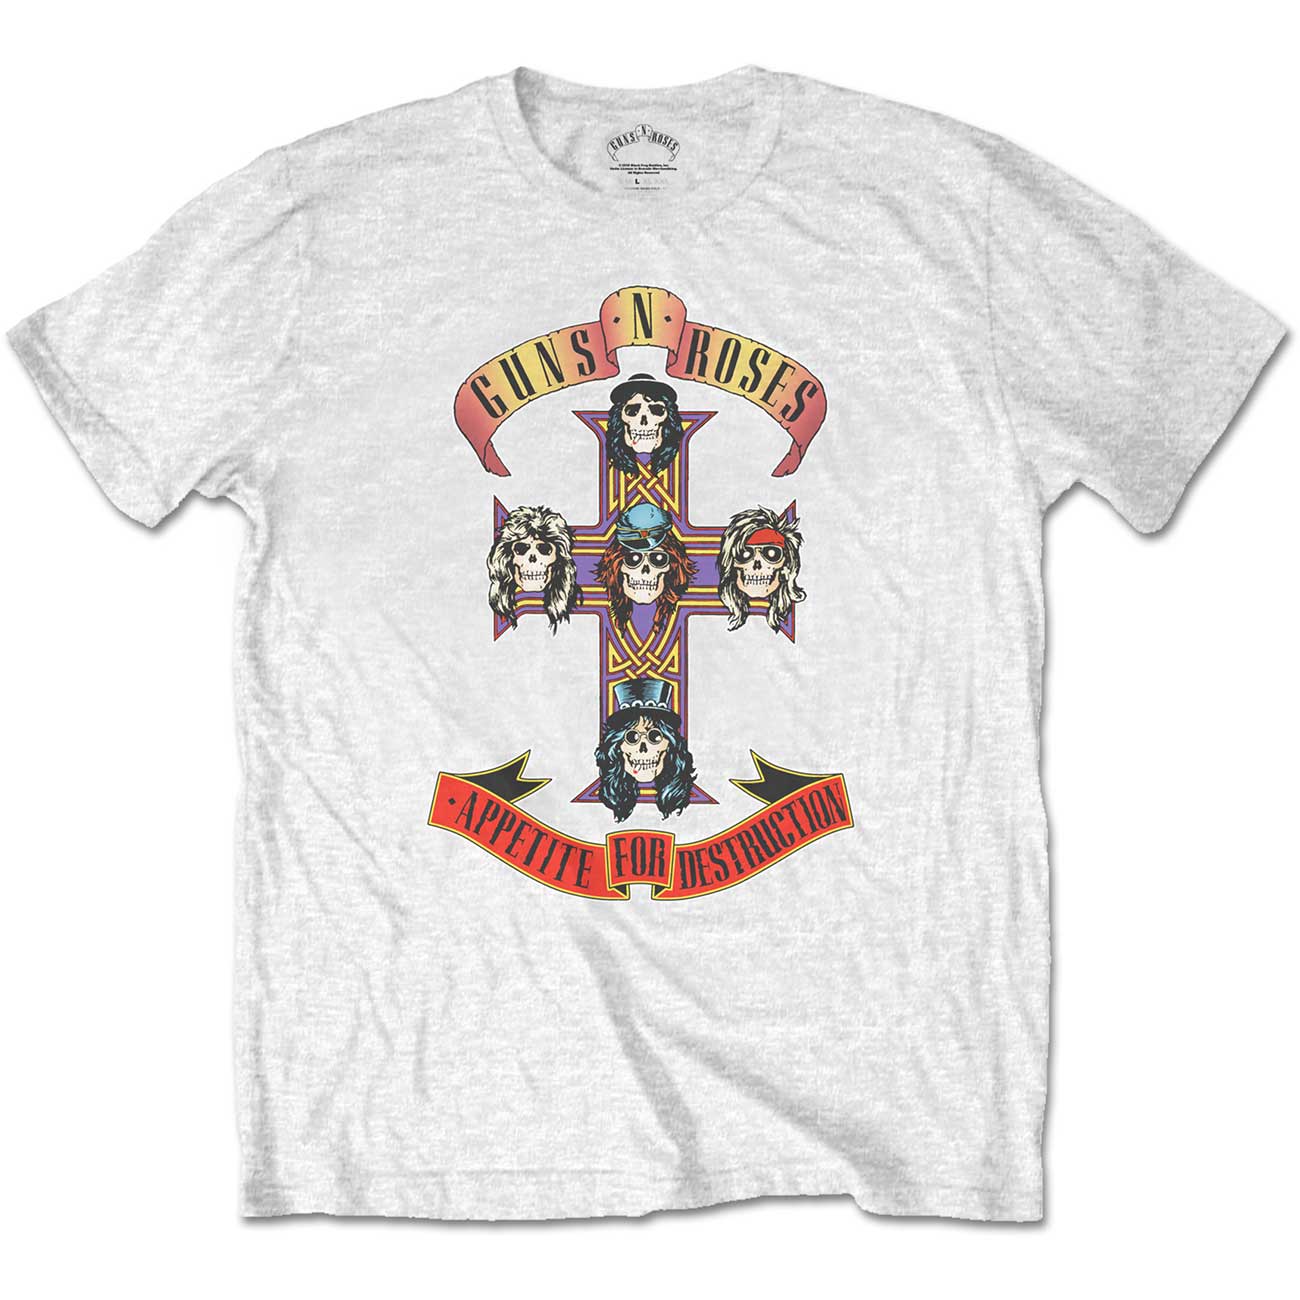 Guns N' Roses Unisex T-Shirt: Appetite for Destruction (Retail Pack)